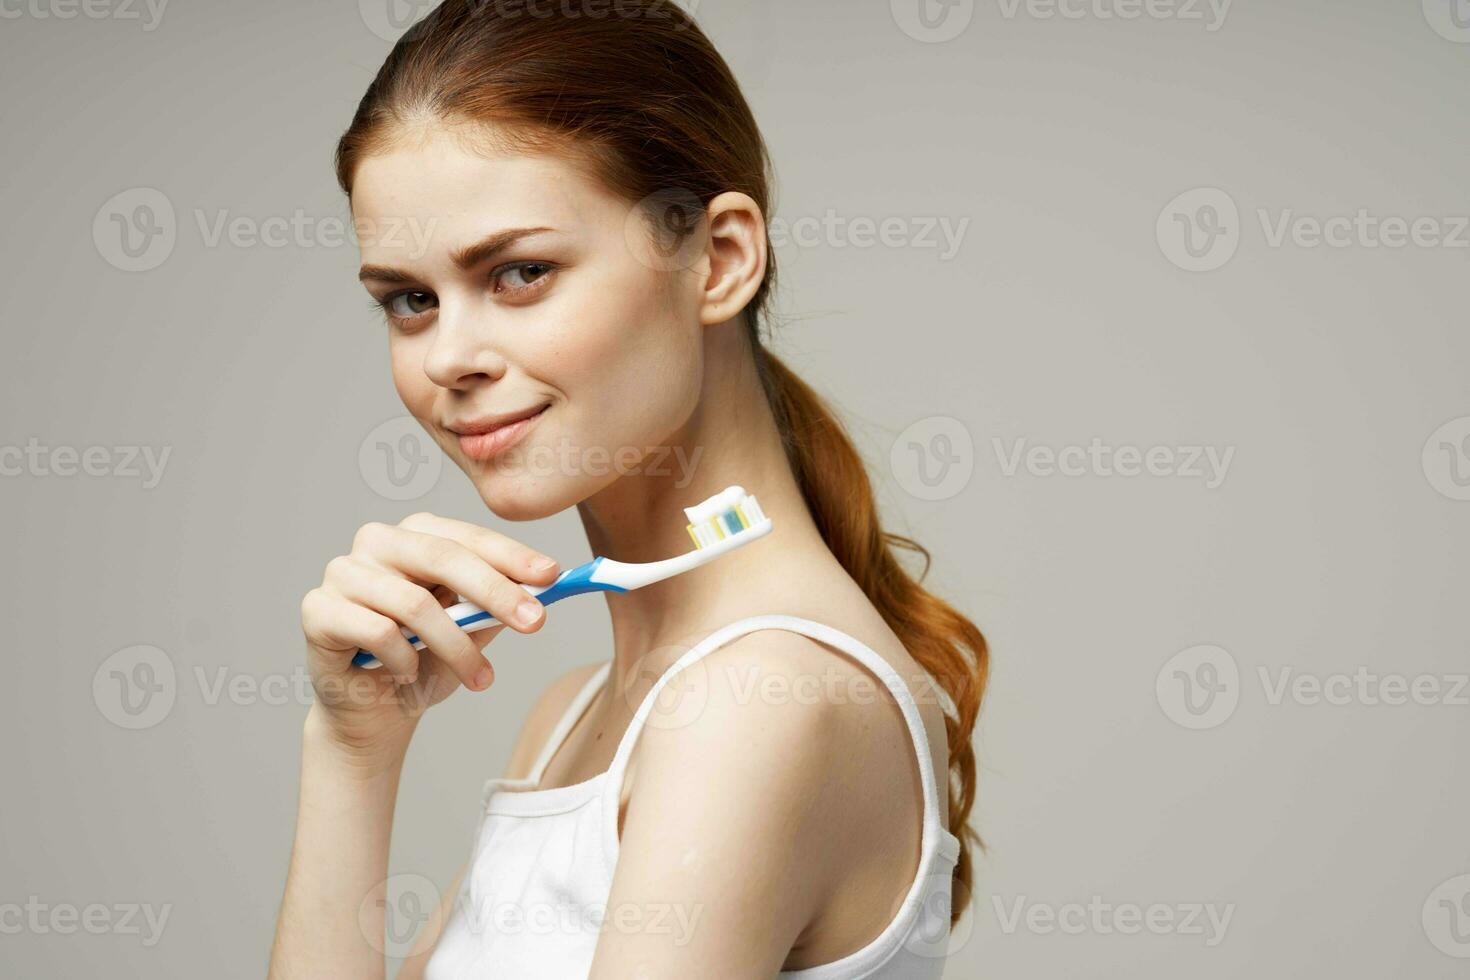 jolie femme dentifrice brossage les dents dentaire santé studio mode de vie photo